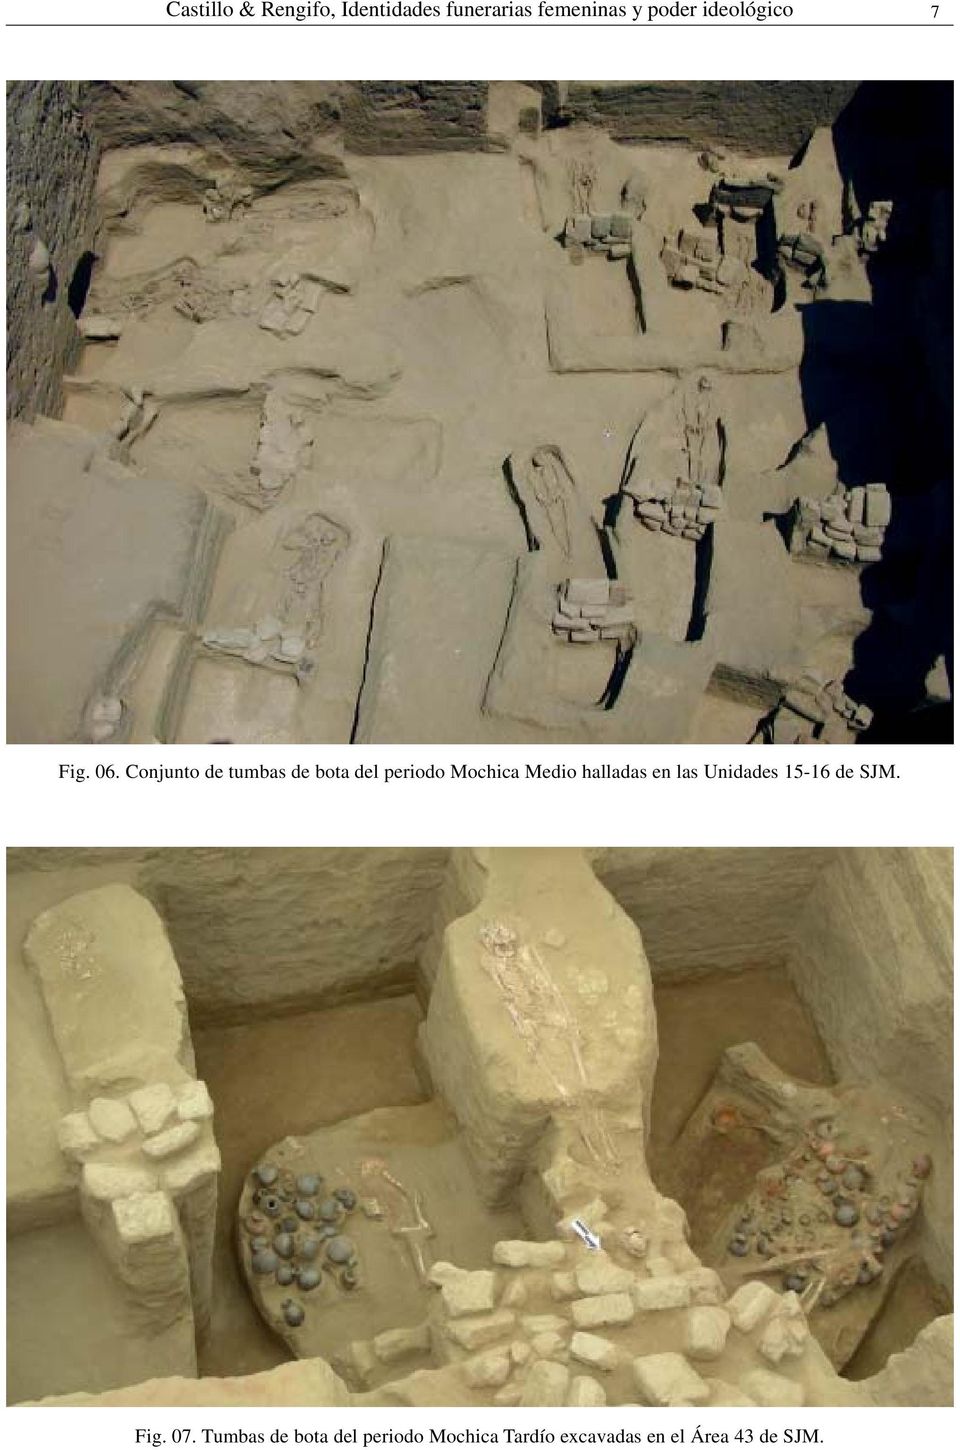 Conjunto de tumbas de bota del periodo Mochica Medio halladas en